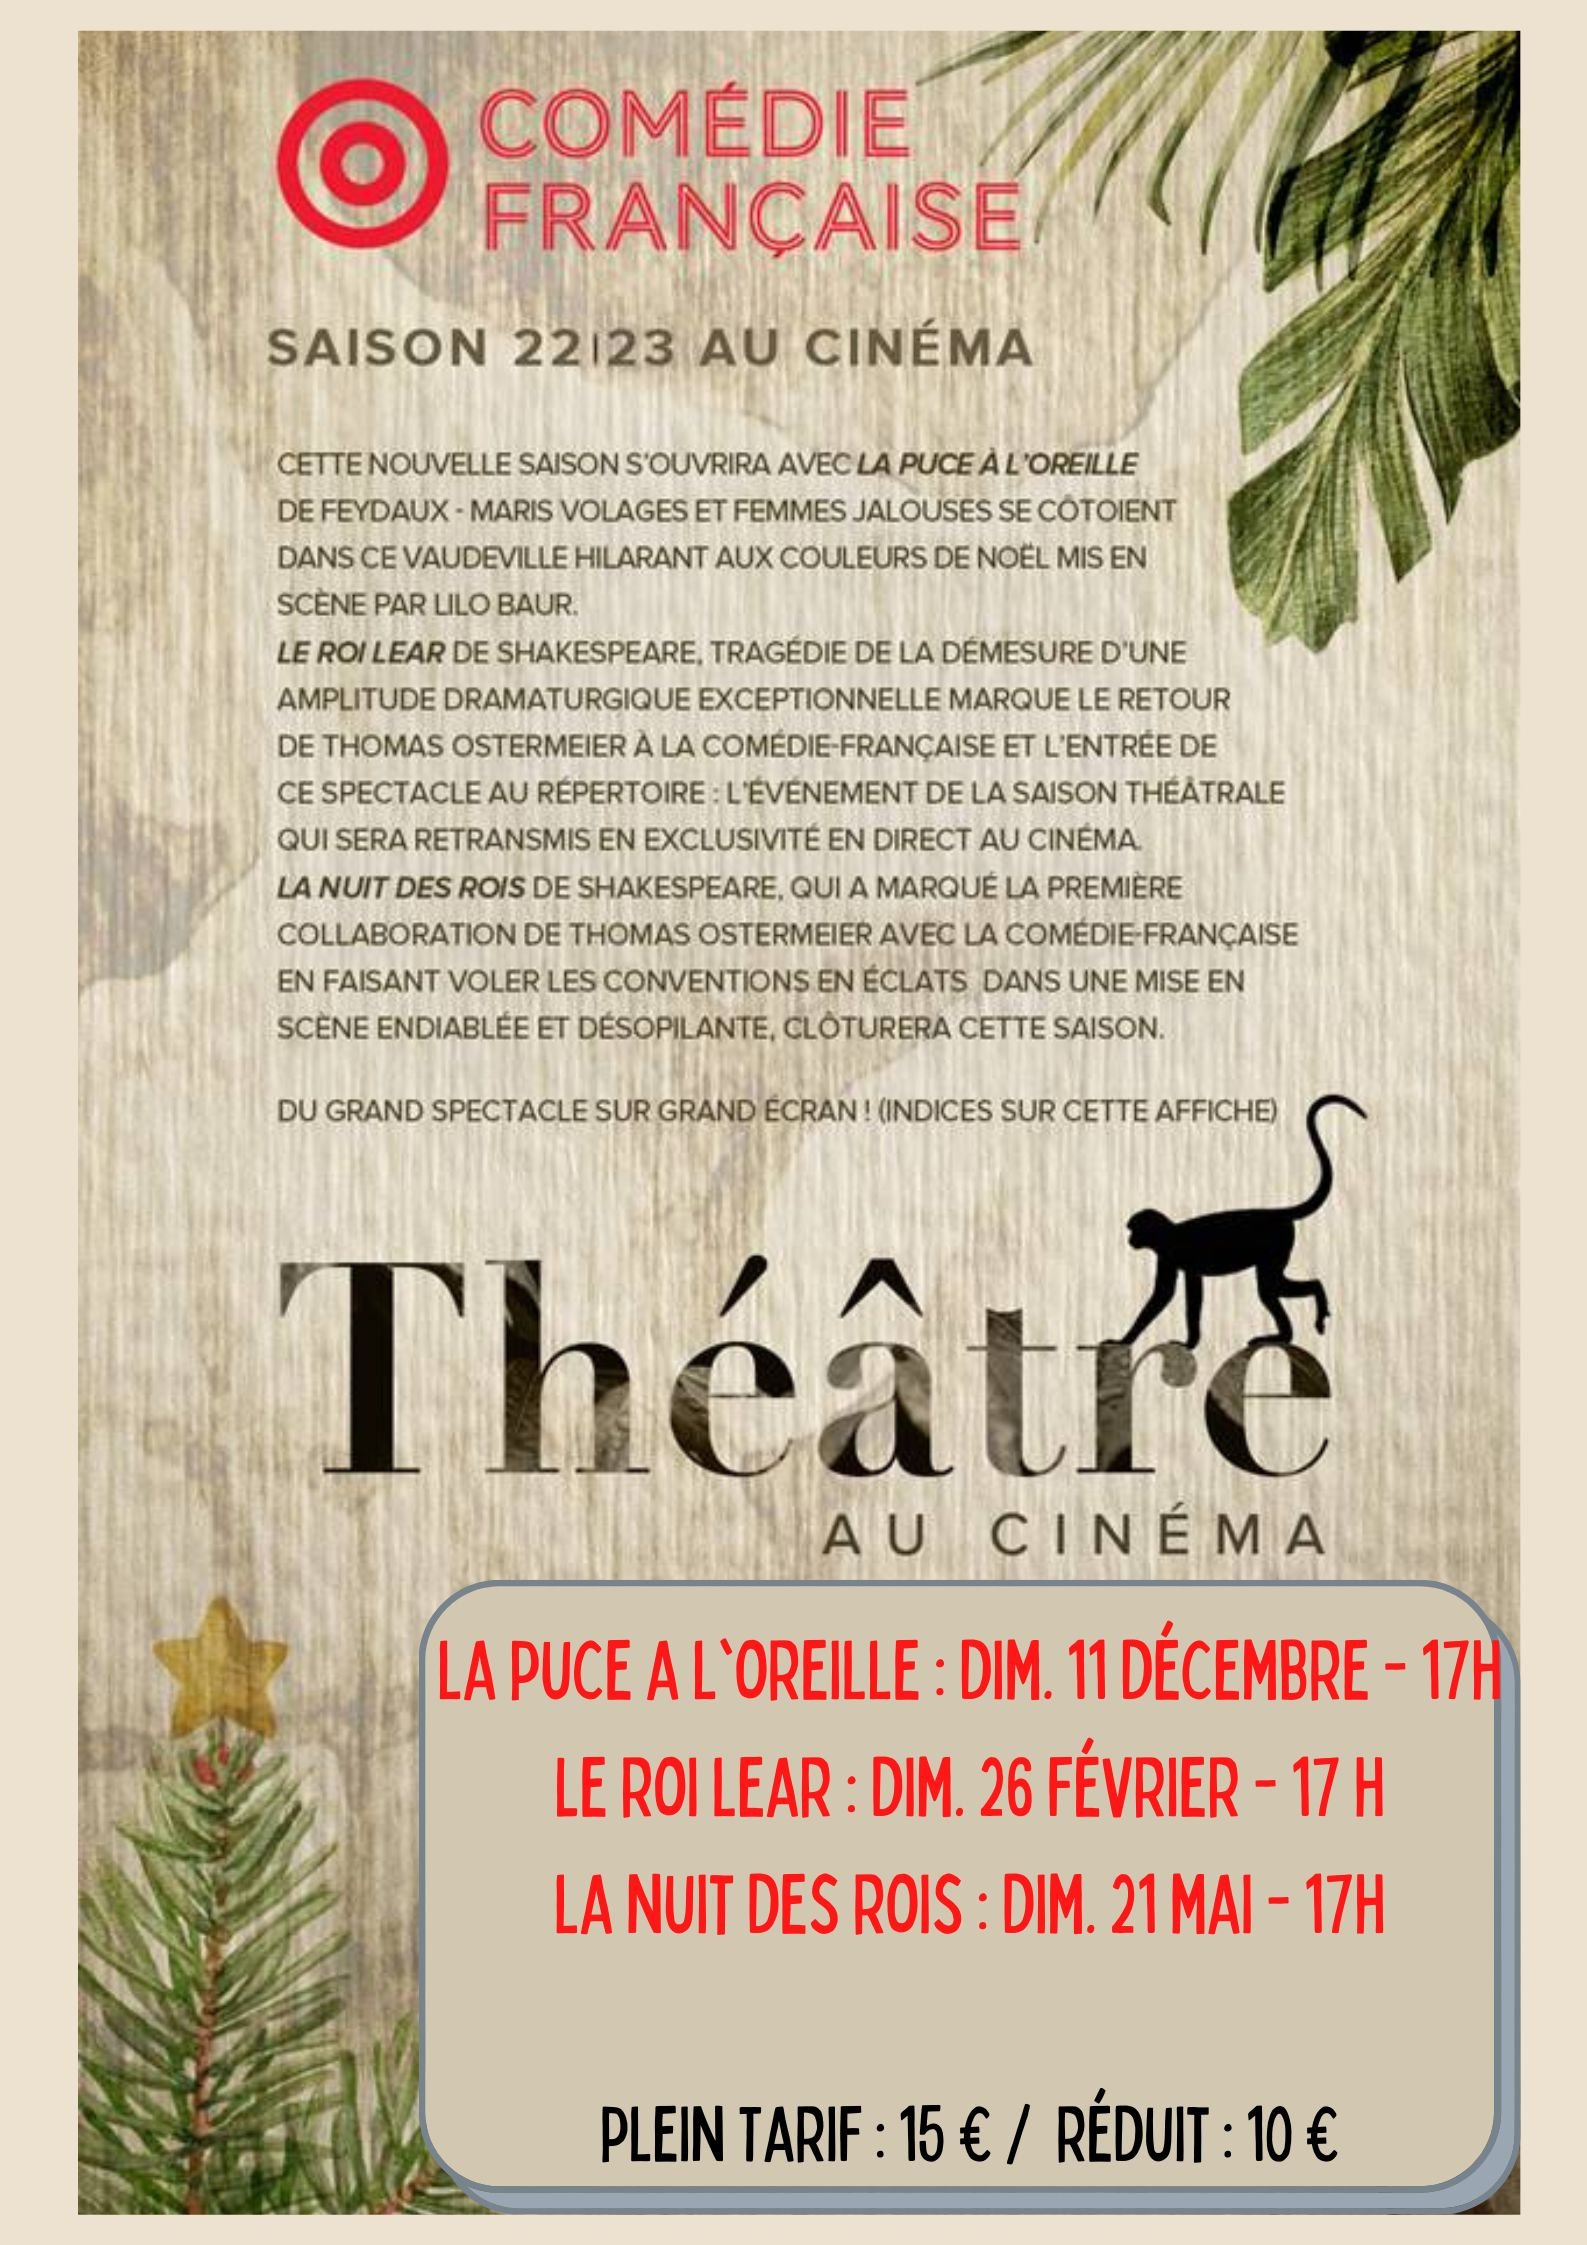 Théâtre au cinéma depuis la Comédie Française